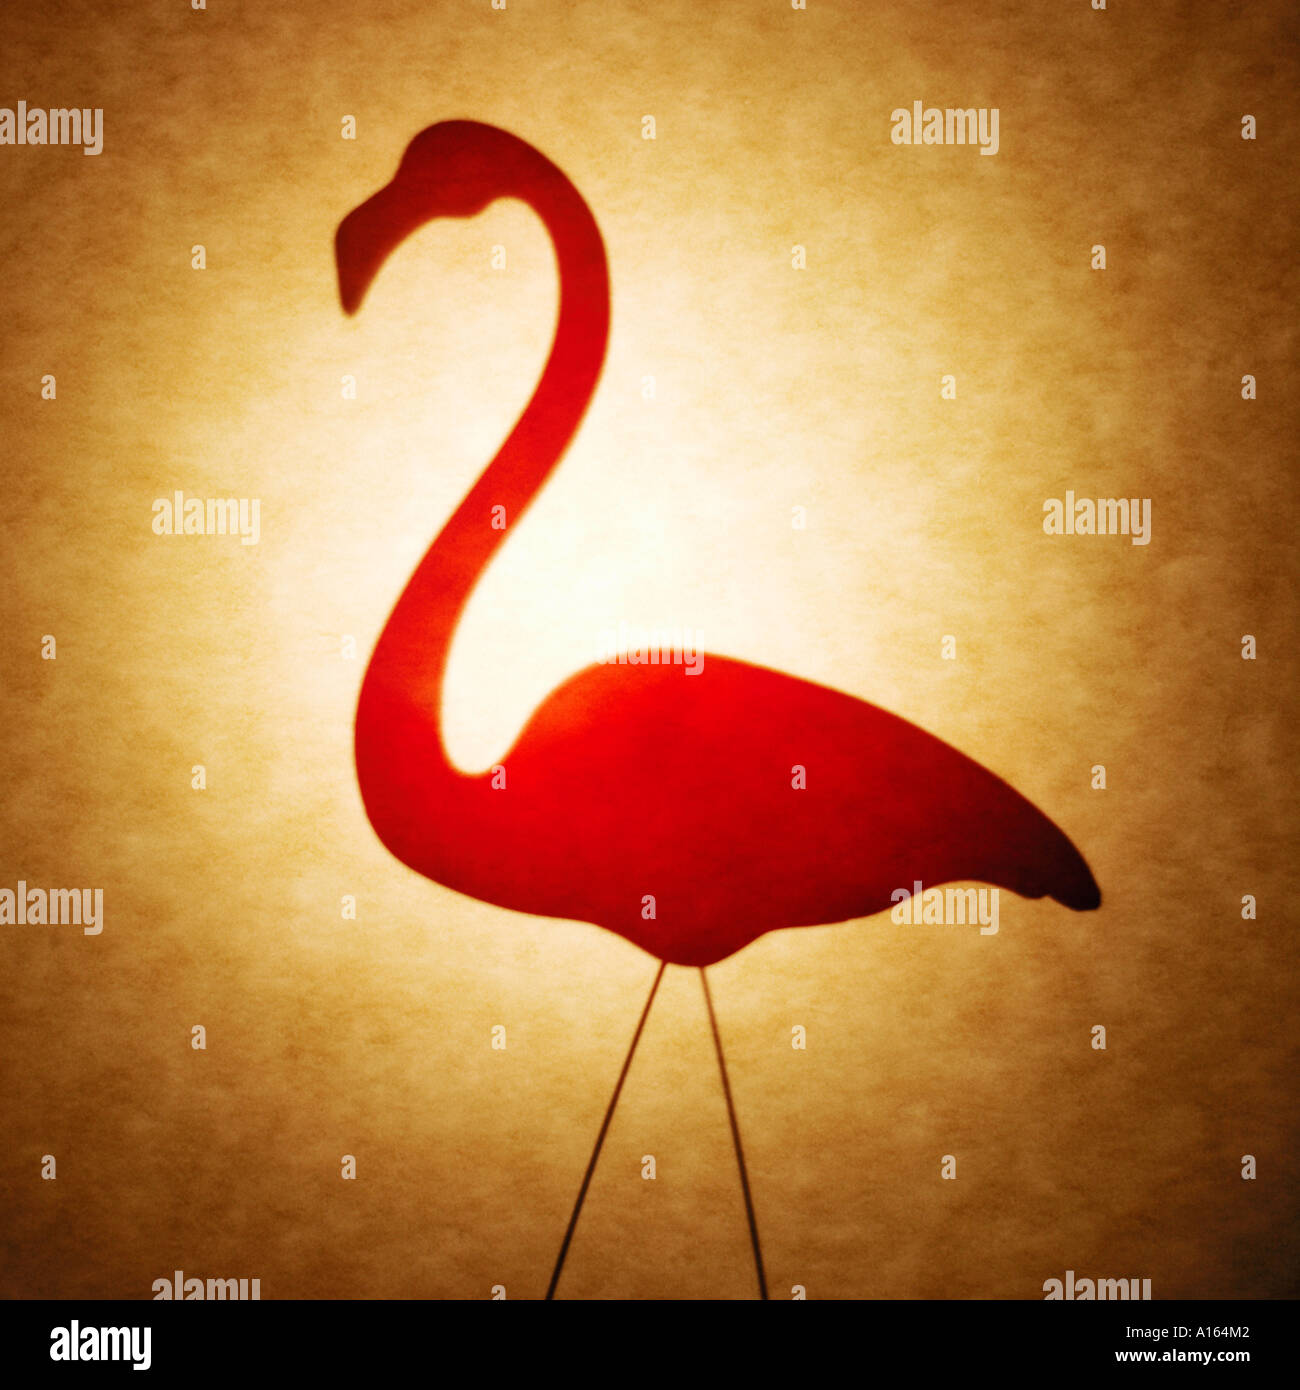 Flamingo Silhouette Stock Photo